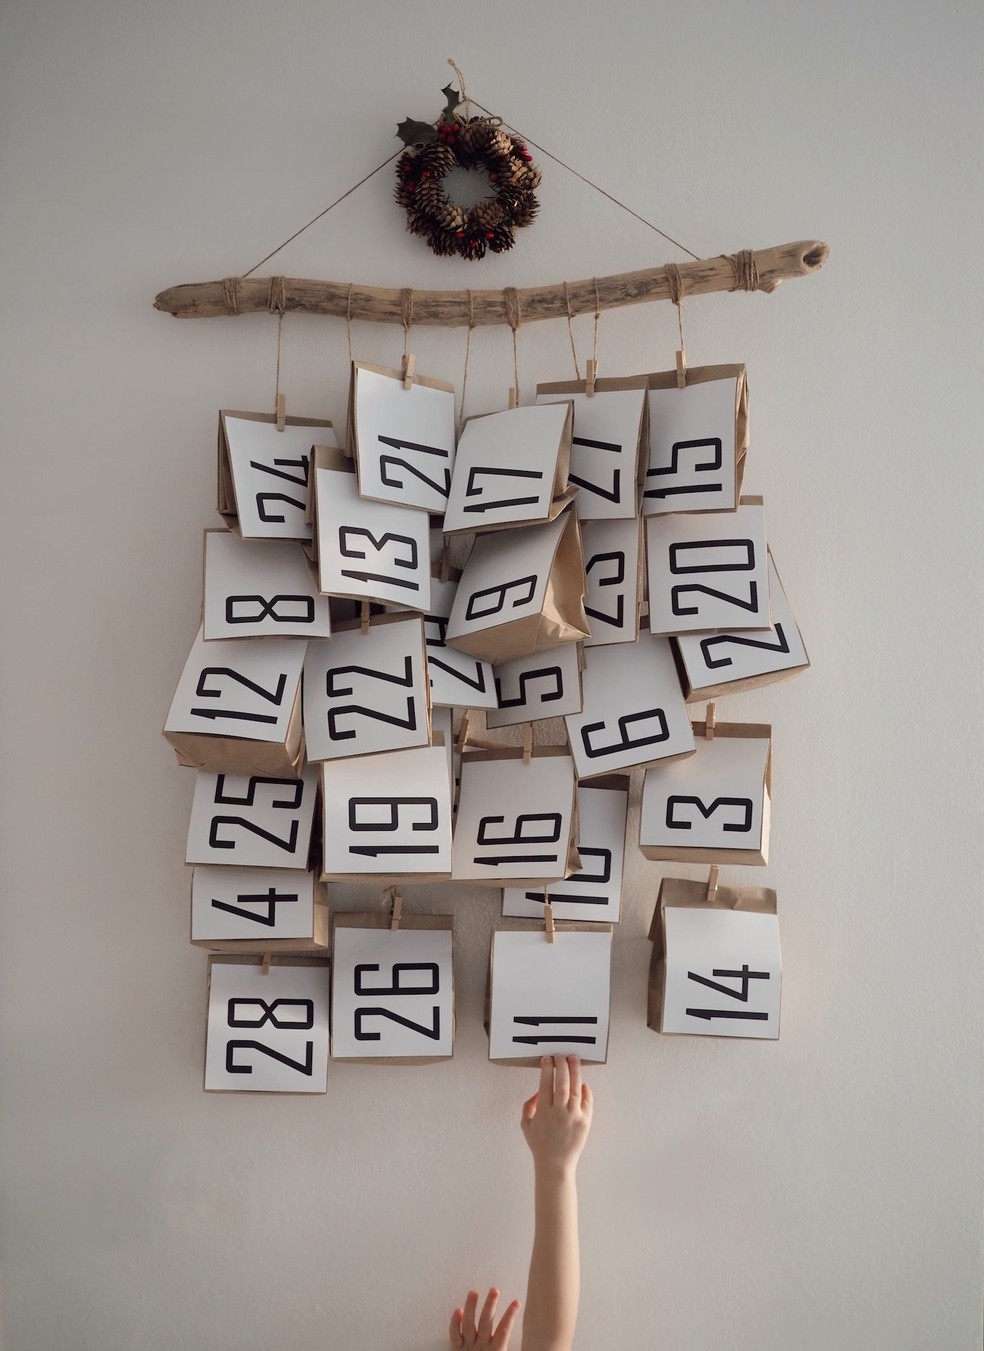 O calendário do advento é um enfeite lúdico e super fácil de fazer em casa com envelopes ou sacos de papel — Foto: Unsplash / Dari lli / Creative Commons